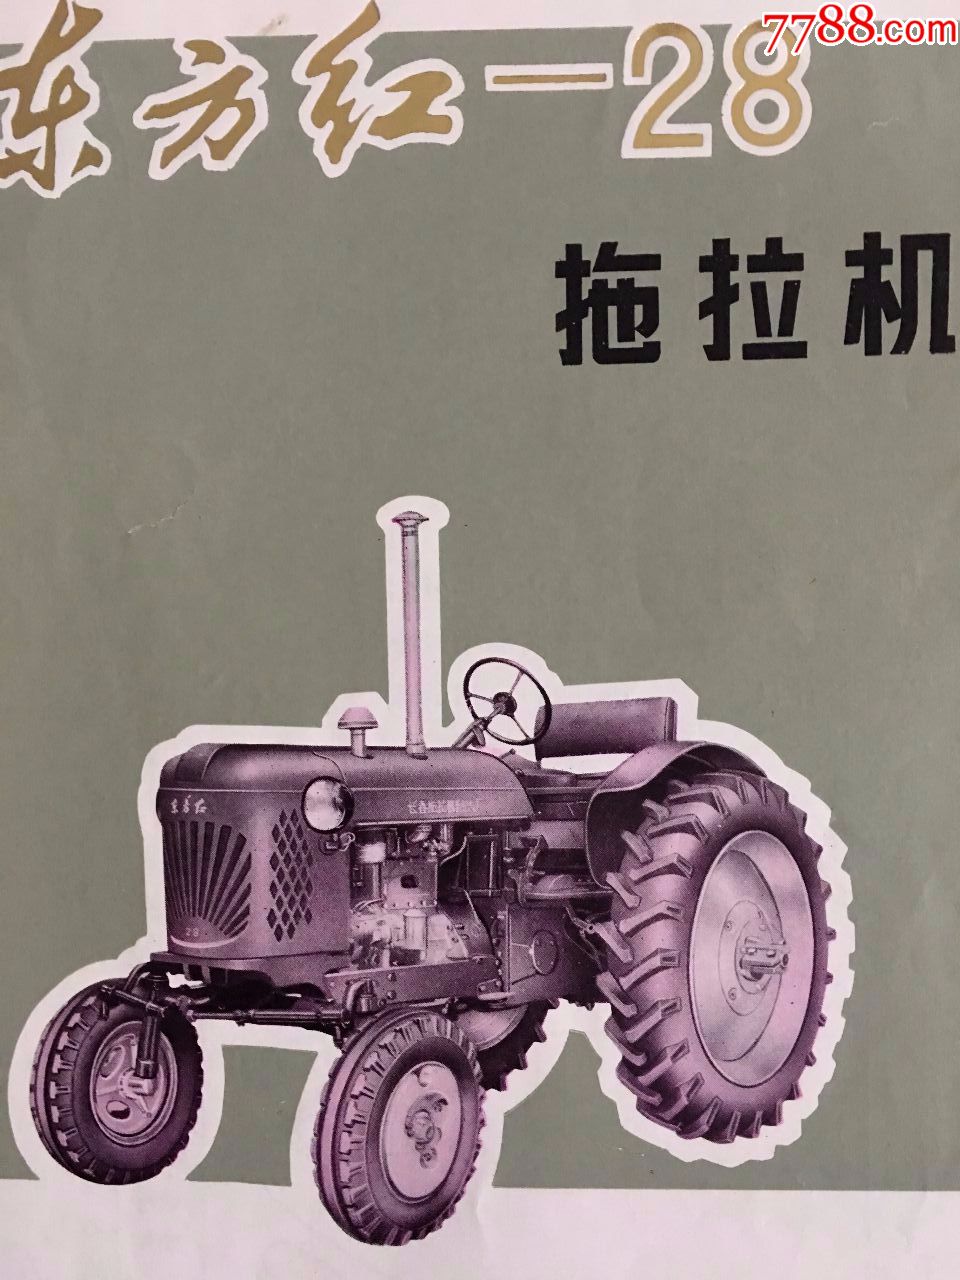 长春东方红28拖拉机出厂说明书(第一批,金字体东方红28车名)